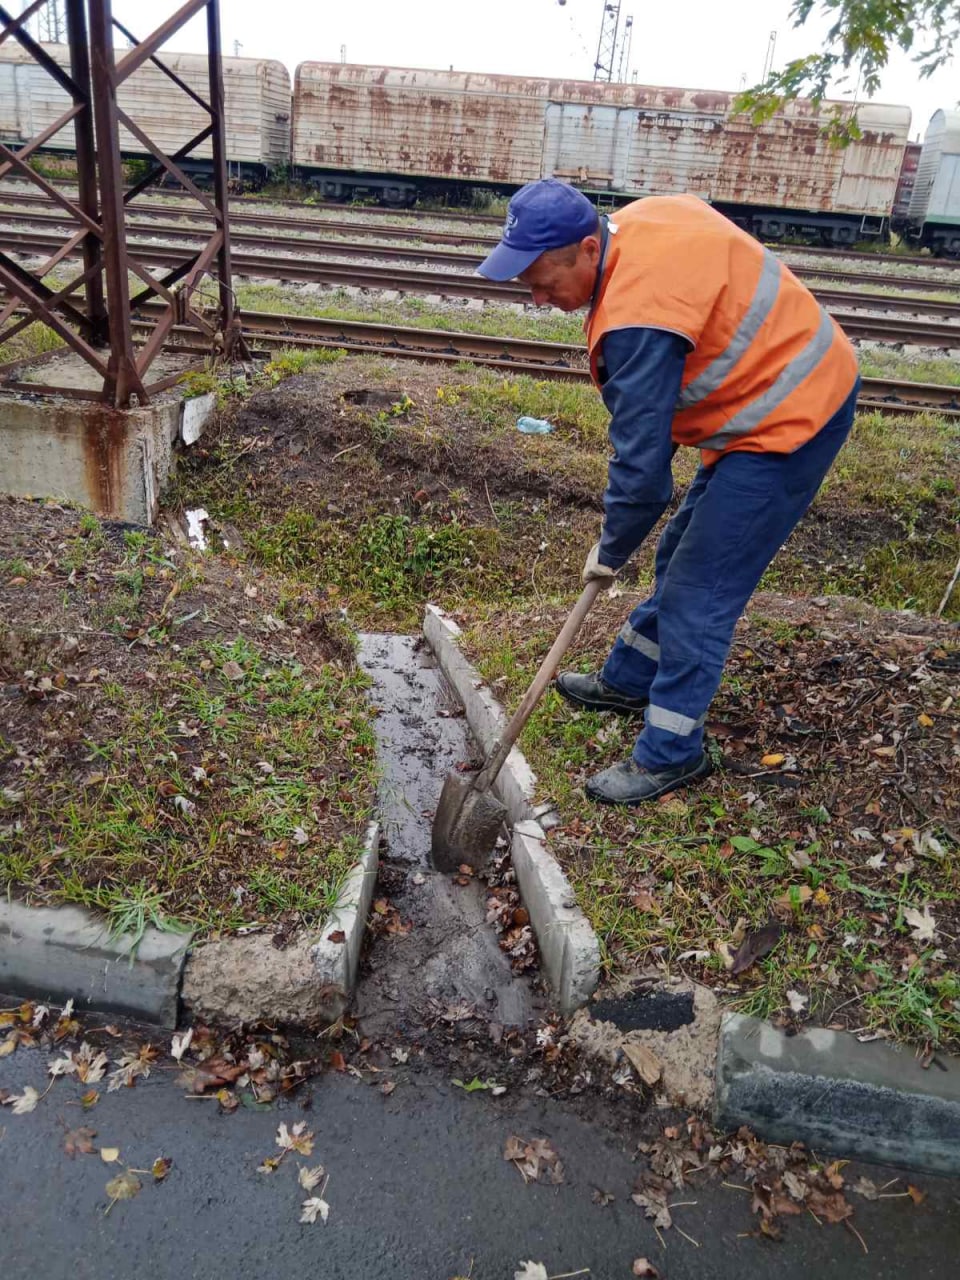 Харьковские коммунальщики очищают ливневки от мусора и листьев